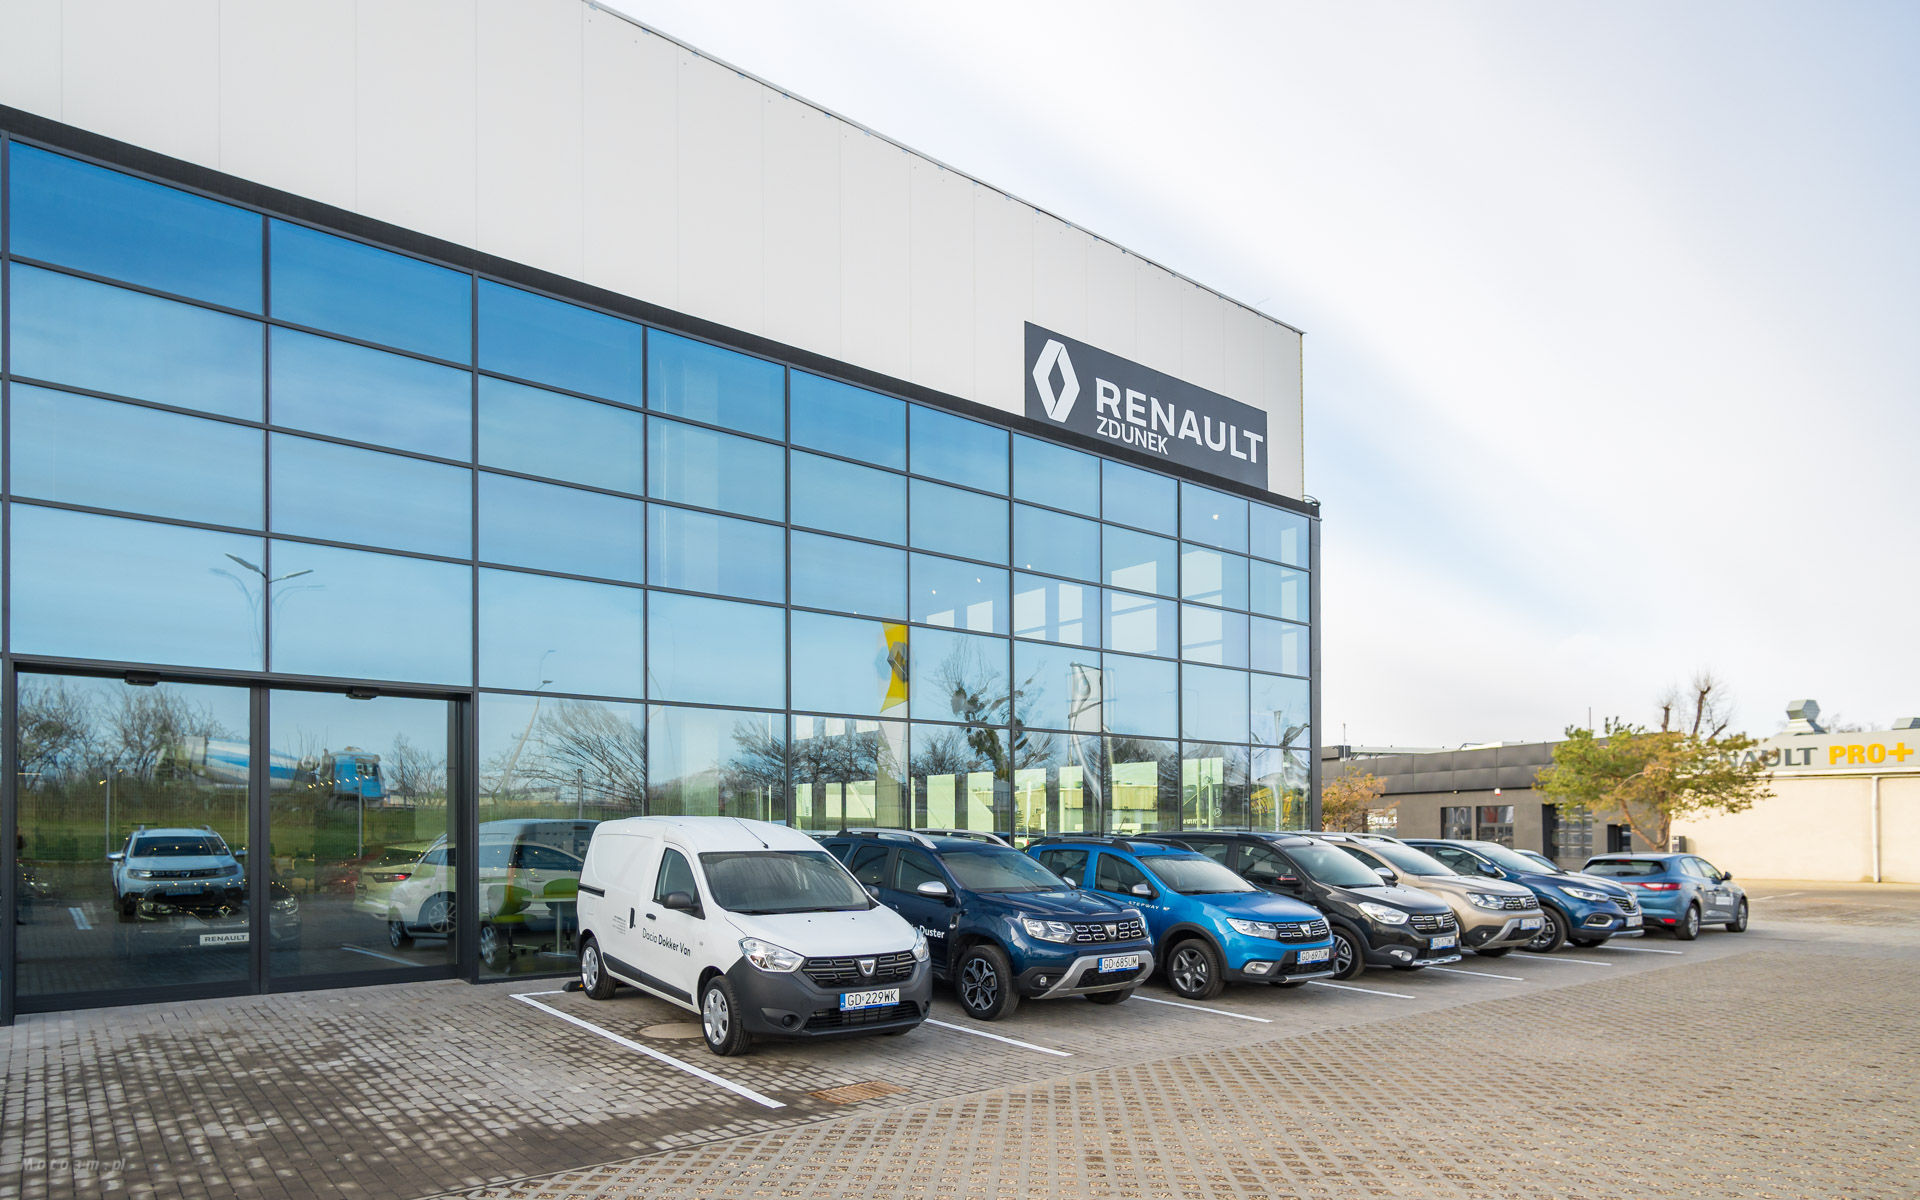 [Wideo] Renault Zdunek uruchomiło nowy salon marki w